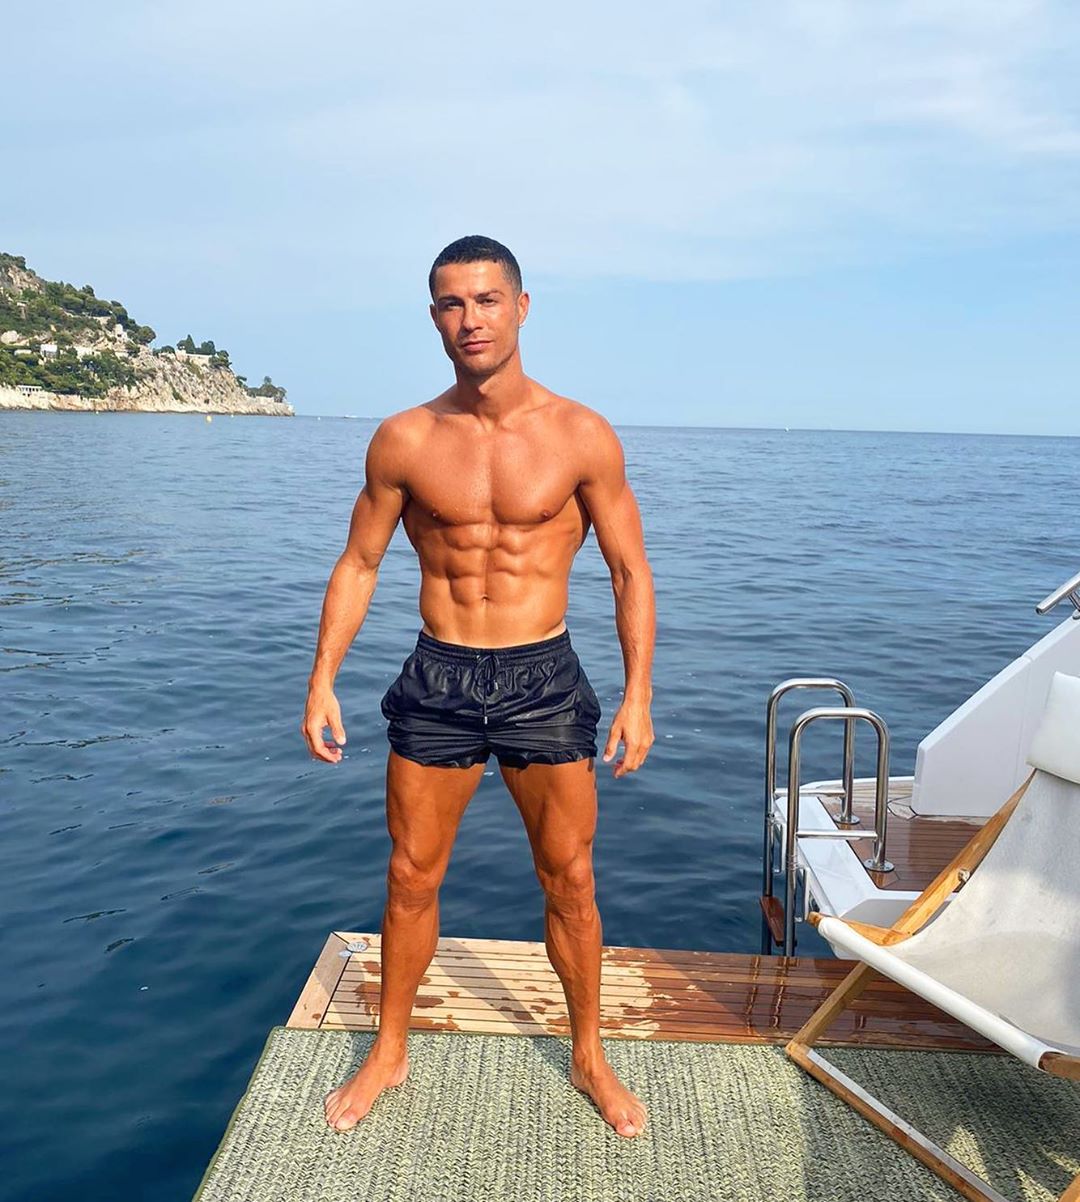 Caras Cristiano Ronaldo exibe os músculos em nova fotografia